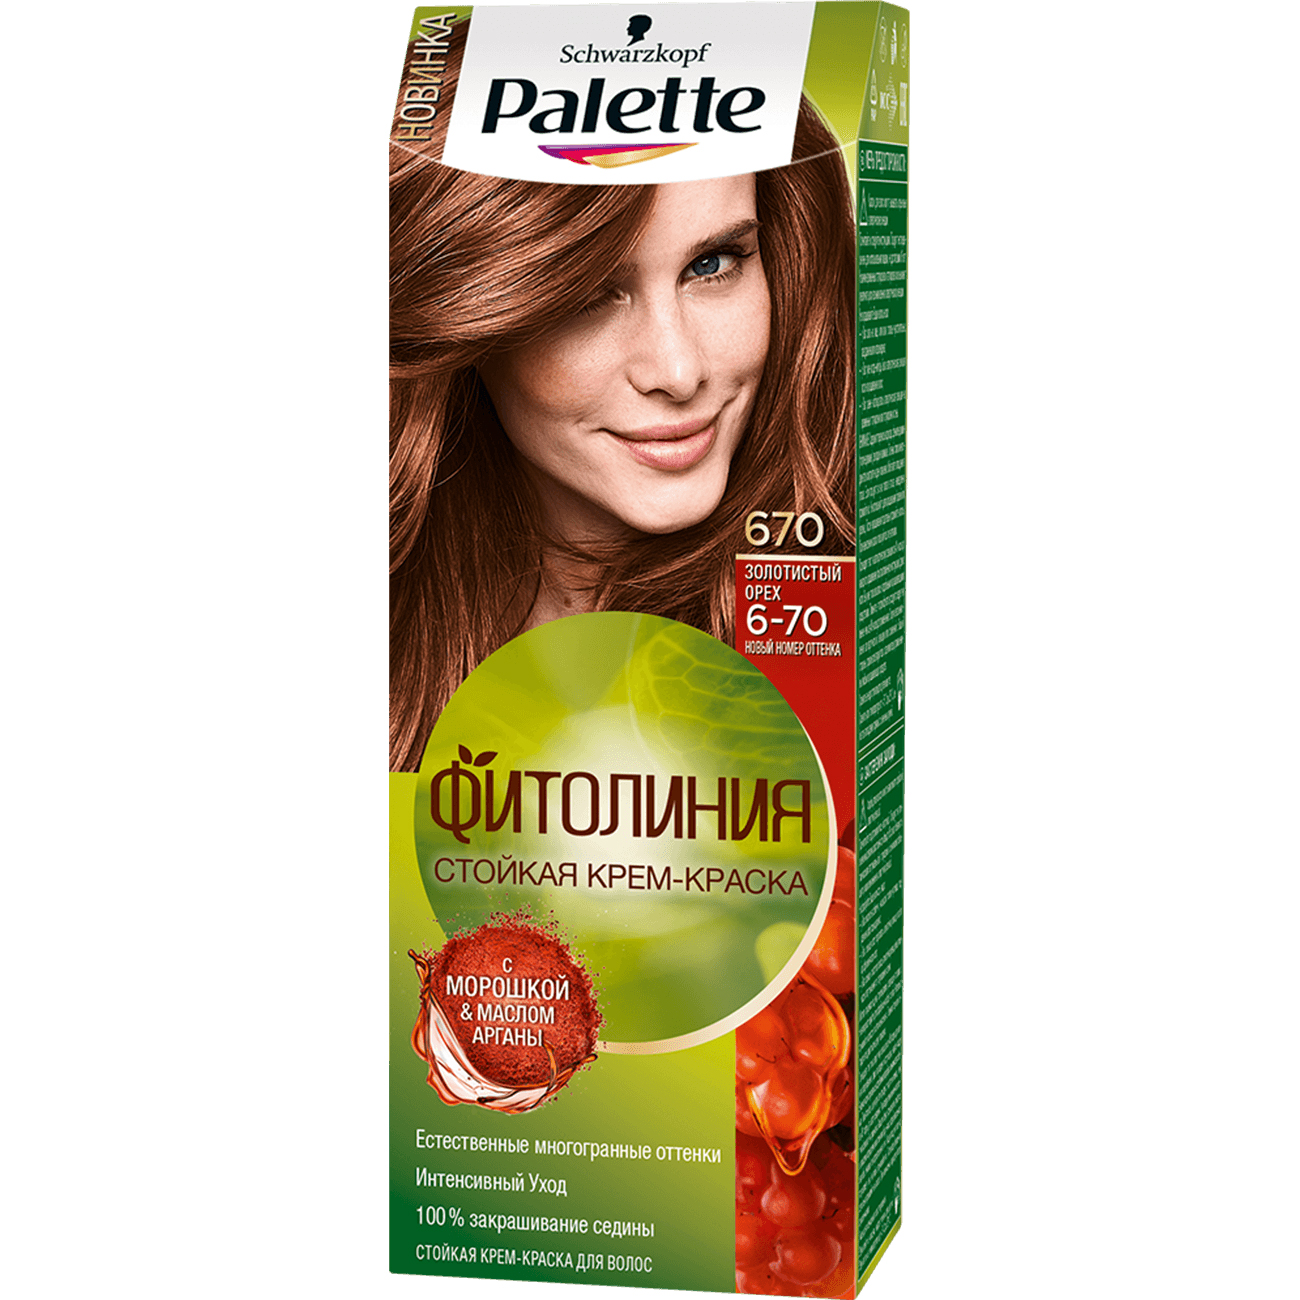 Palette фитолиния ореховый каштановый краска для волос 650